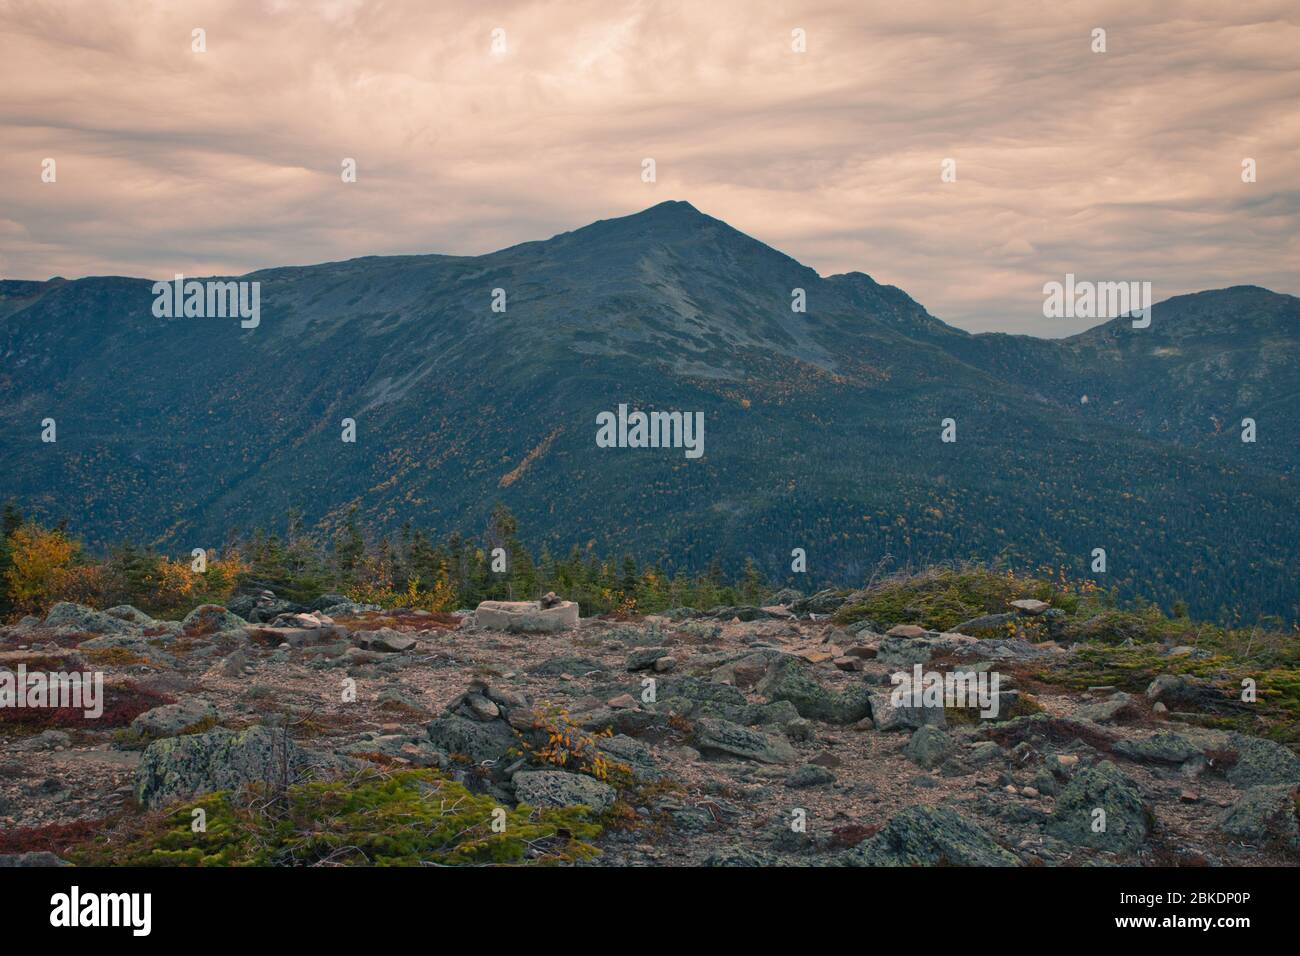 Hermosas fotos de paisaje durante la temporada de otoño desde Mount Washington en New Hampshire, EE.UU. Aproximadamente 6300 pies de elevación. Tristemente famoso errático Foto de stock